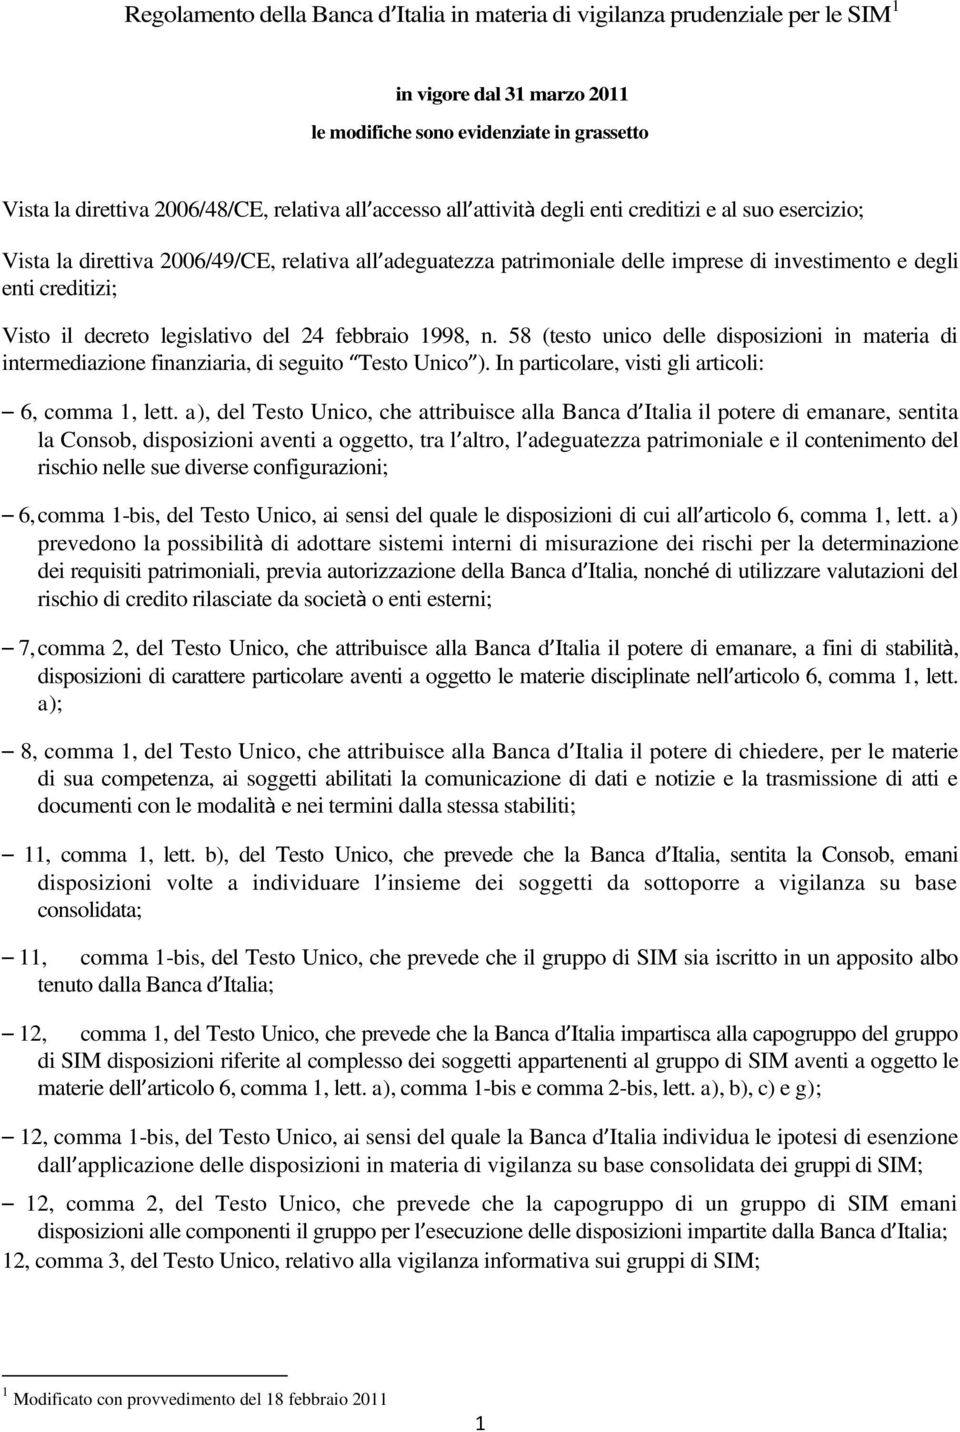 decreto legislativo del 24 febbraio 1998, n. 58 (testo unico delle disposizioni in materia di intermediazione finanziaria, di seguito Testo Unico ).